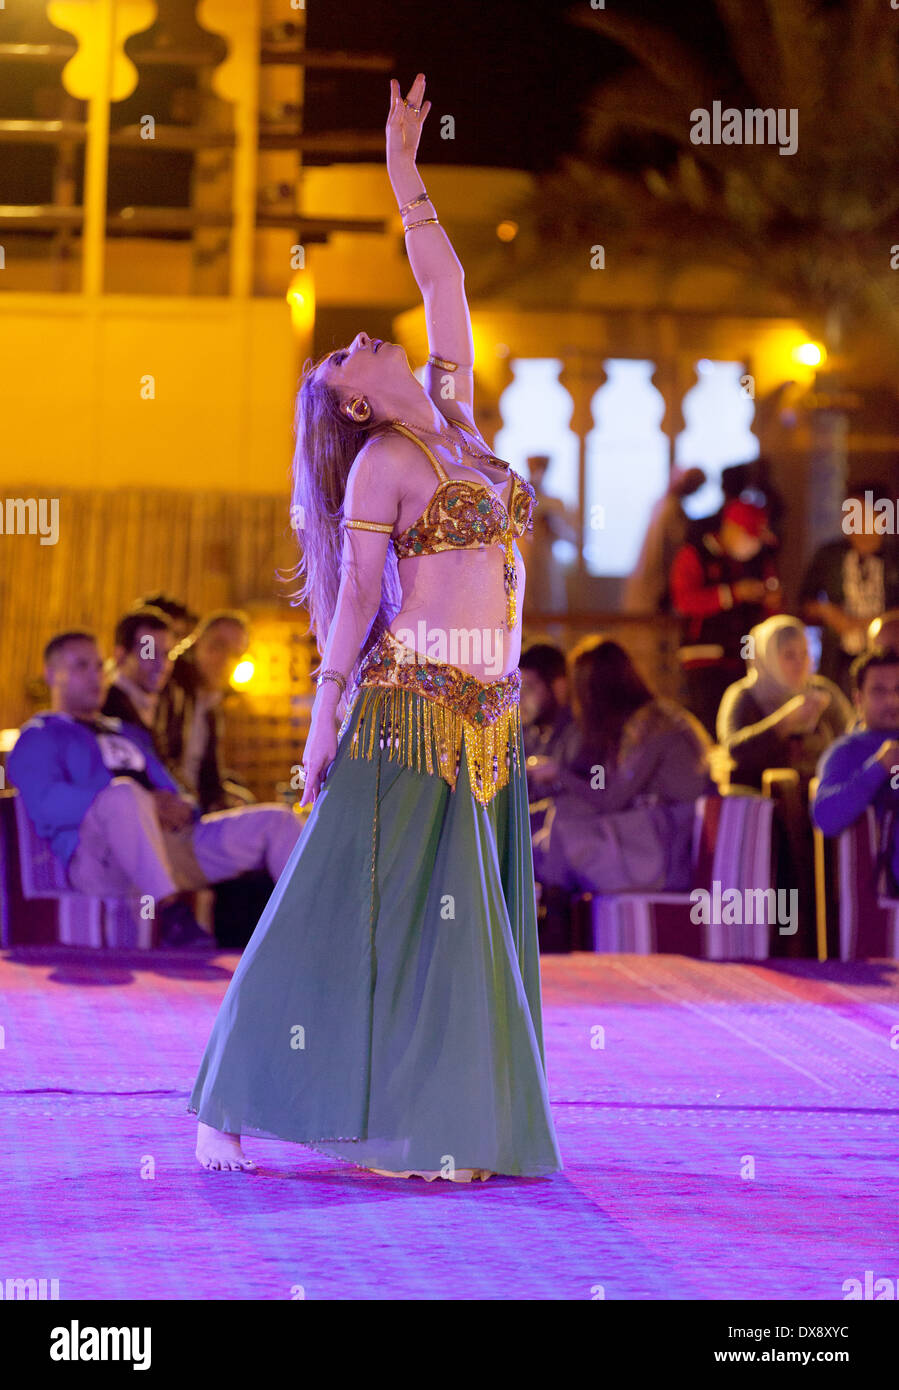 Danseuse du Ventre danse une danse du ventre sur un safari dans le désert, DUBAÏ, ÉMIRATS ARABES UNIS, Émirats arabes unis, Moyen Orient Banque D'Images